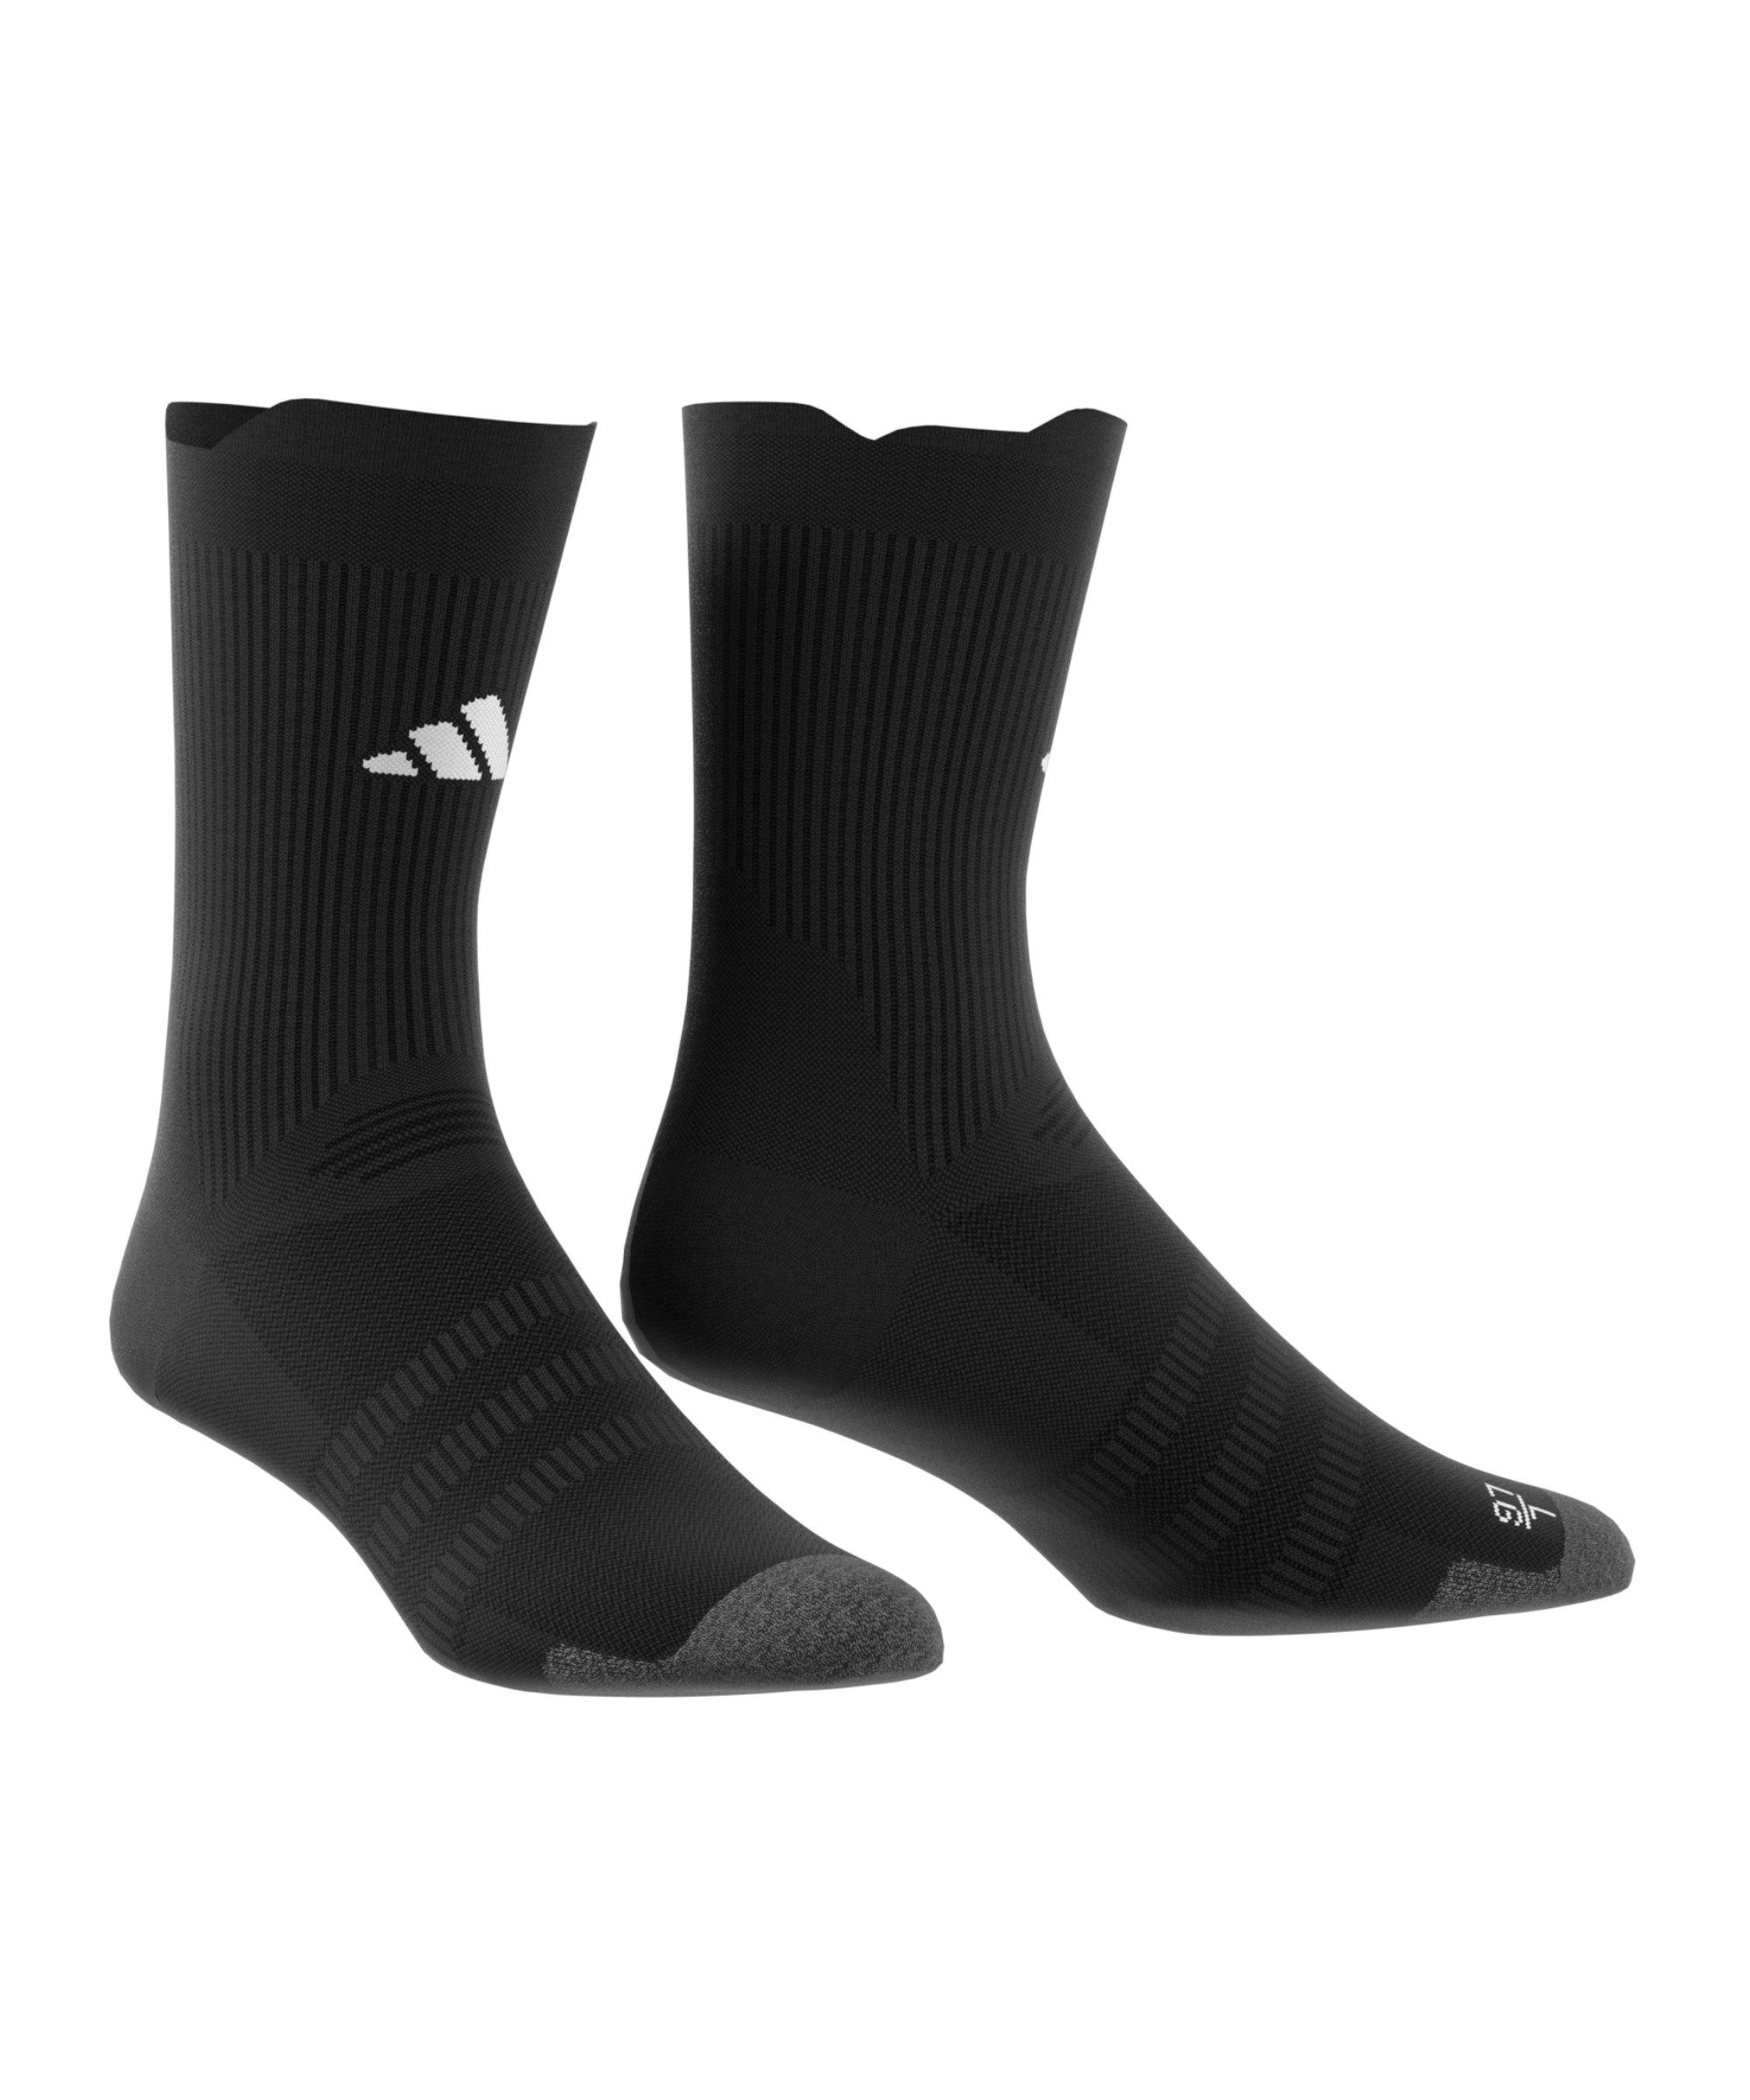 Socken schwarzweiss Sportsocken Light Performance default adidas